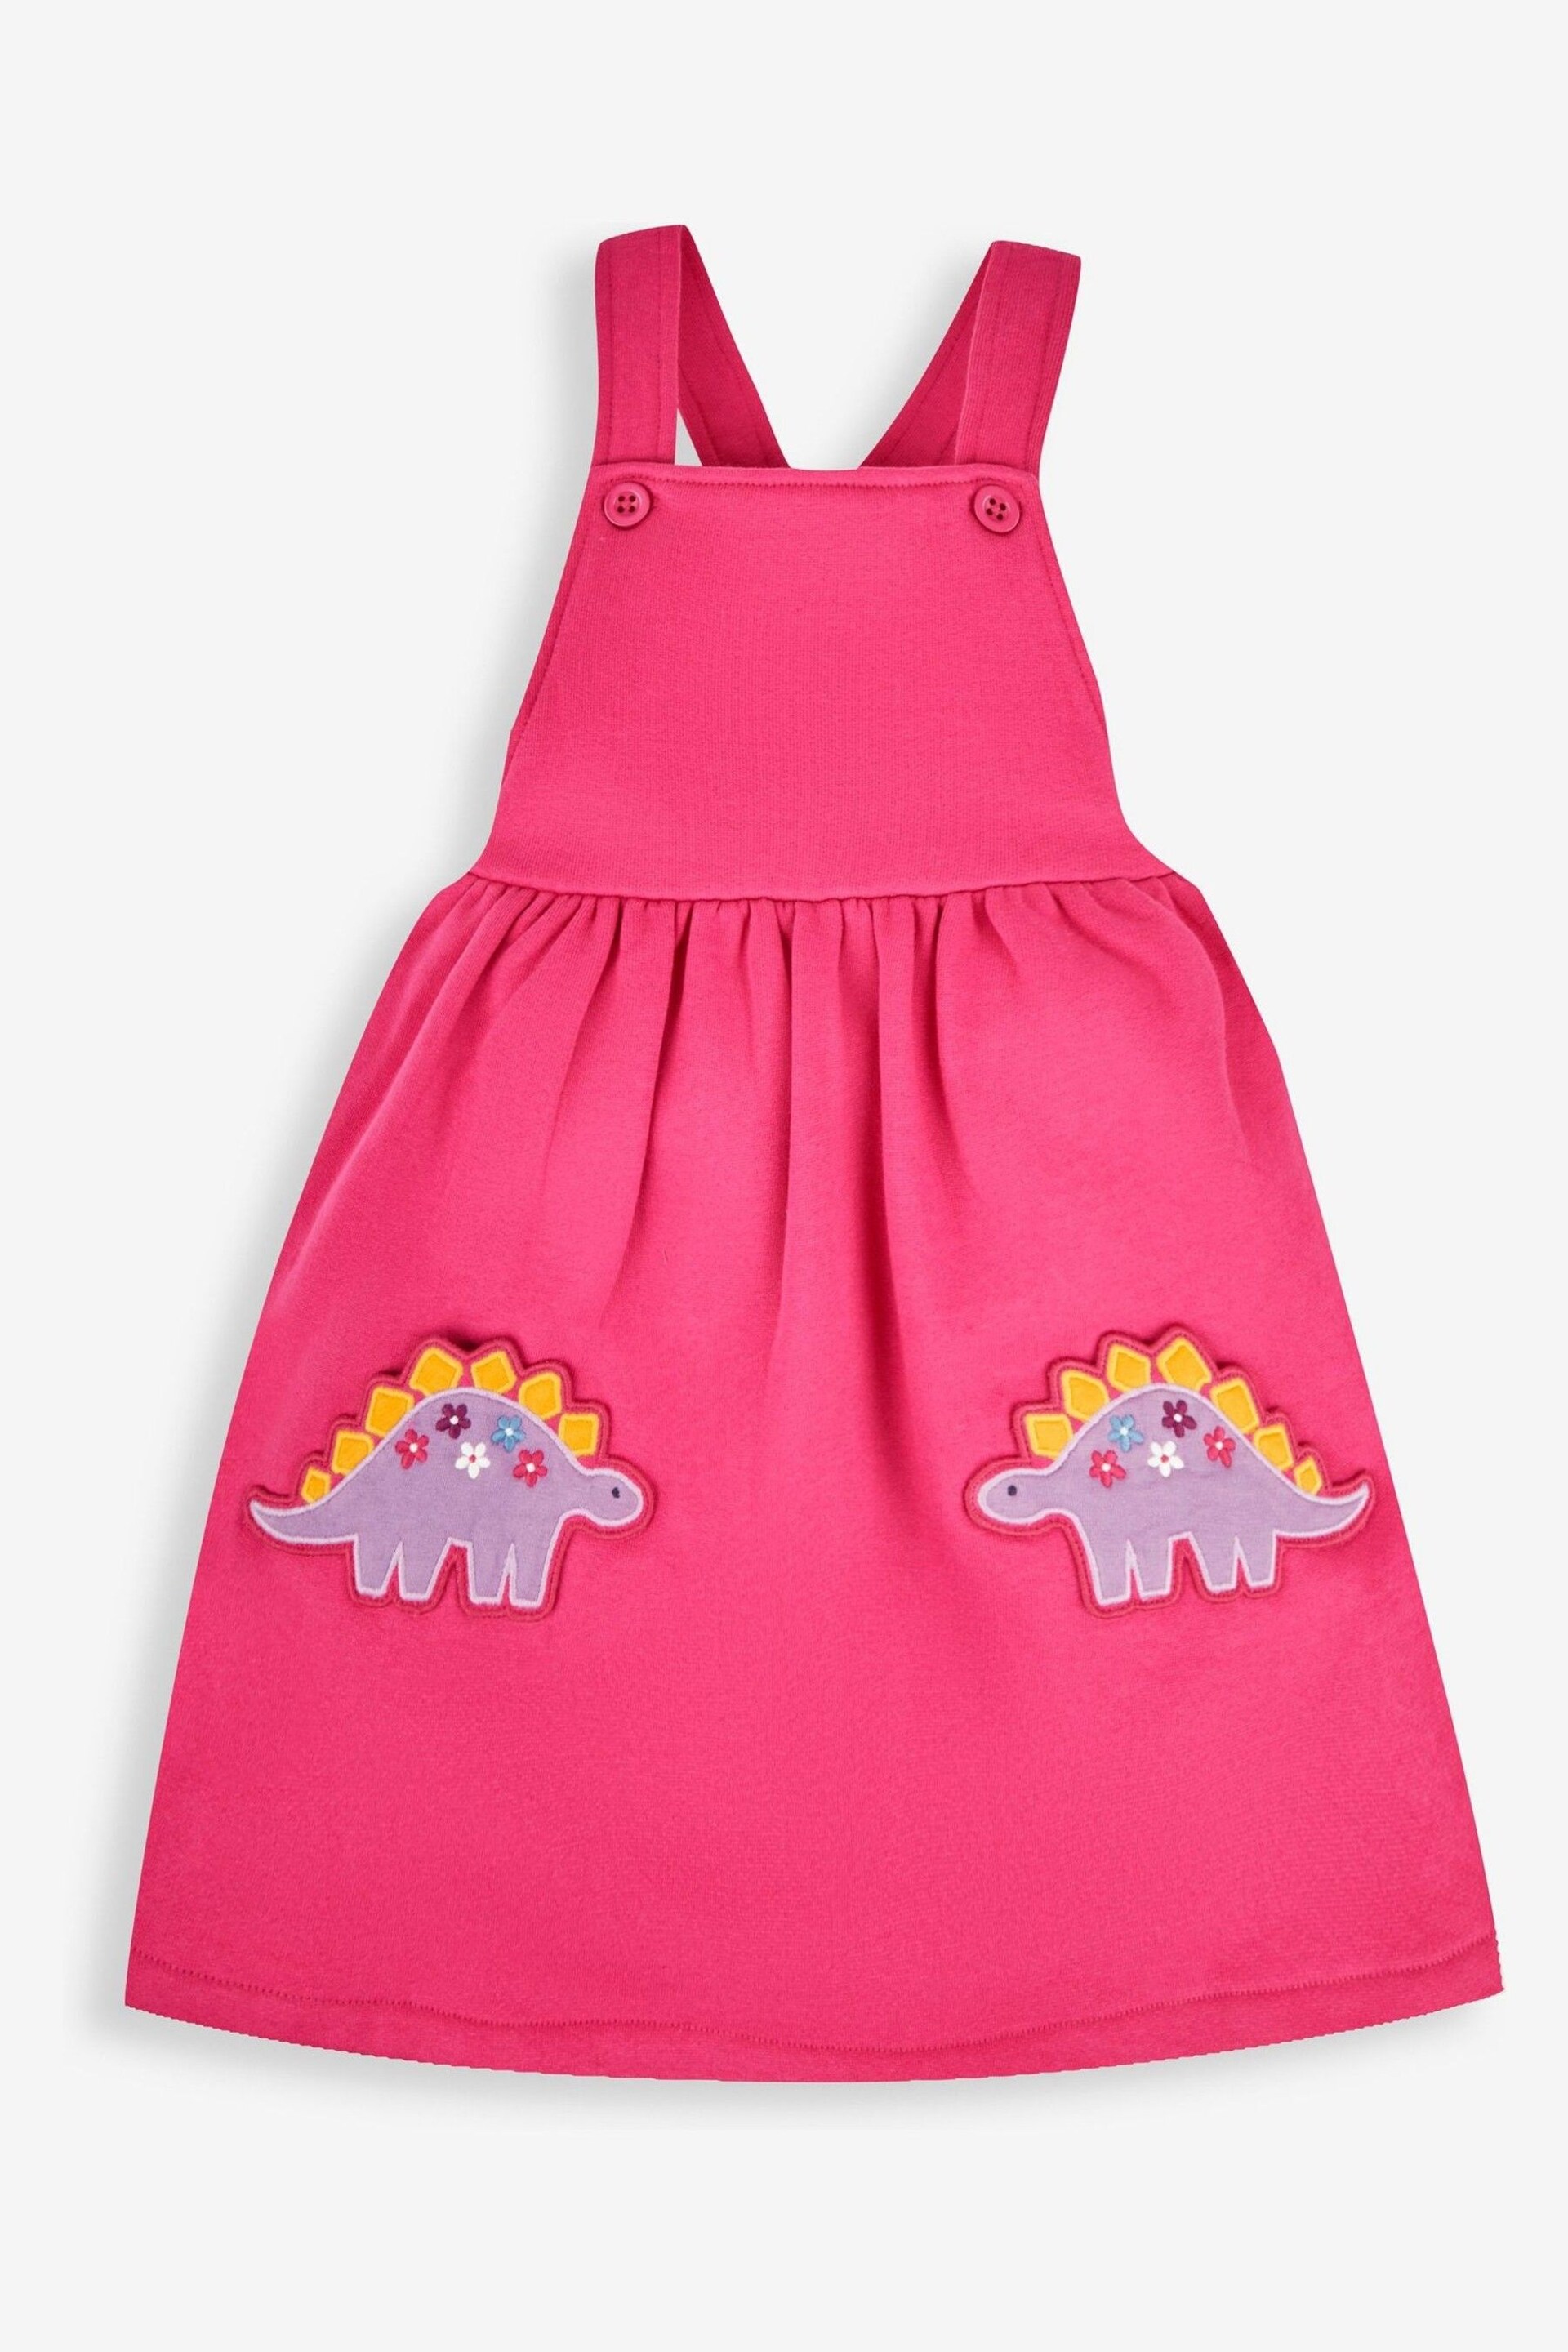 JoJo Maman Bébé Raspberry Pink Dino Girls' 2-Piece Appliqué Pinafore Dress & Top Set - Image 3 of 6